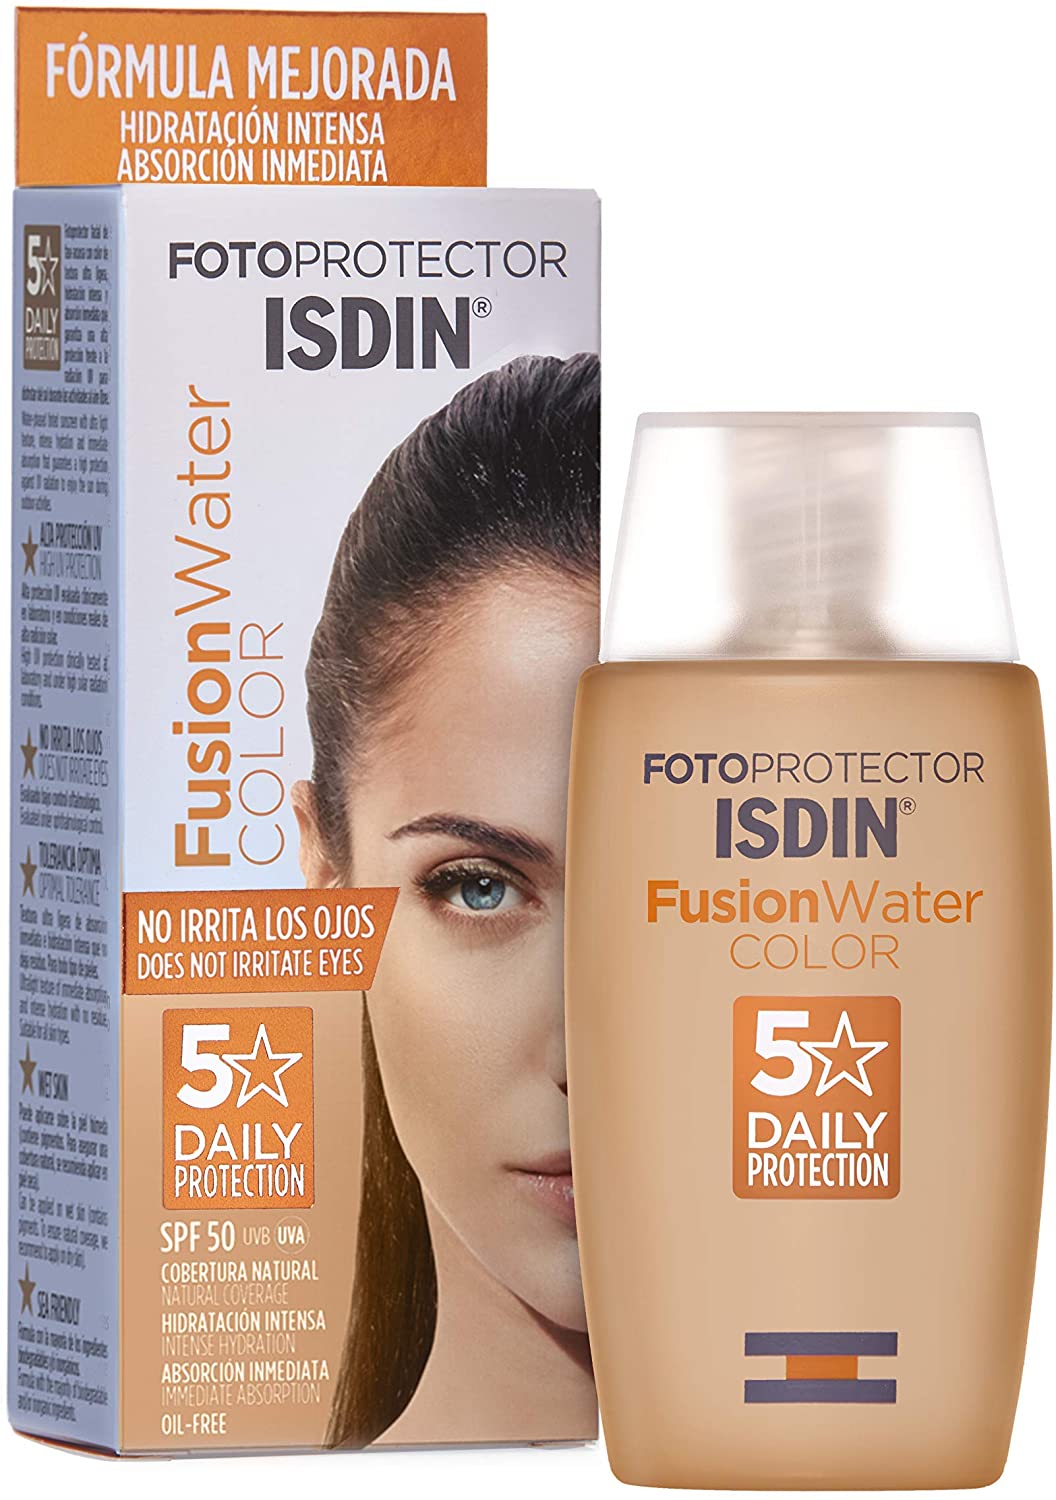 Fotoprotector ISDIN Fusion Water Color SPF 50 50ml | Fotoprotettore viso per uso quotidiano | Texture ultralleggera